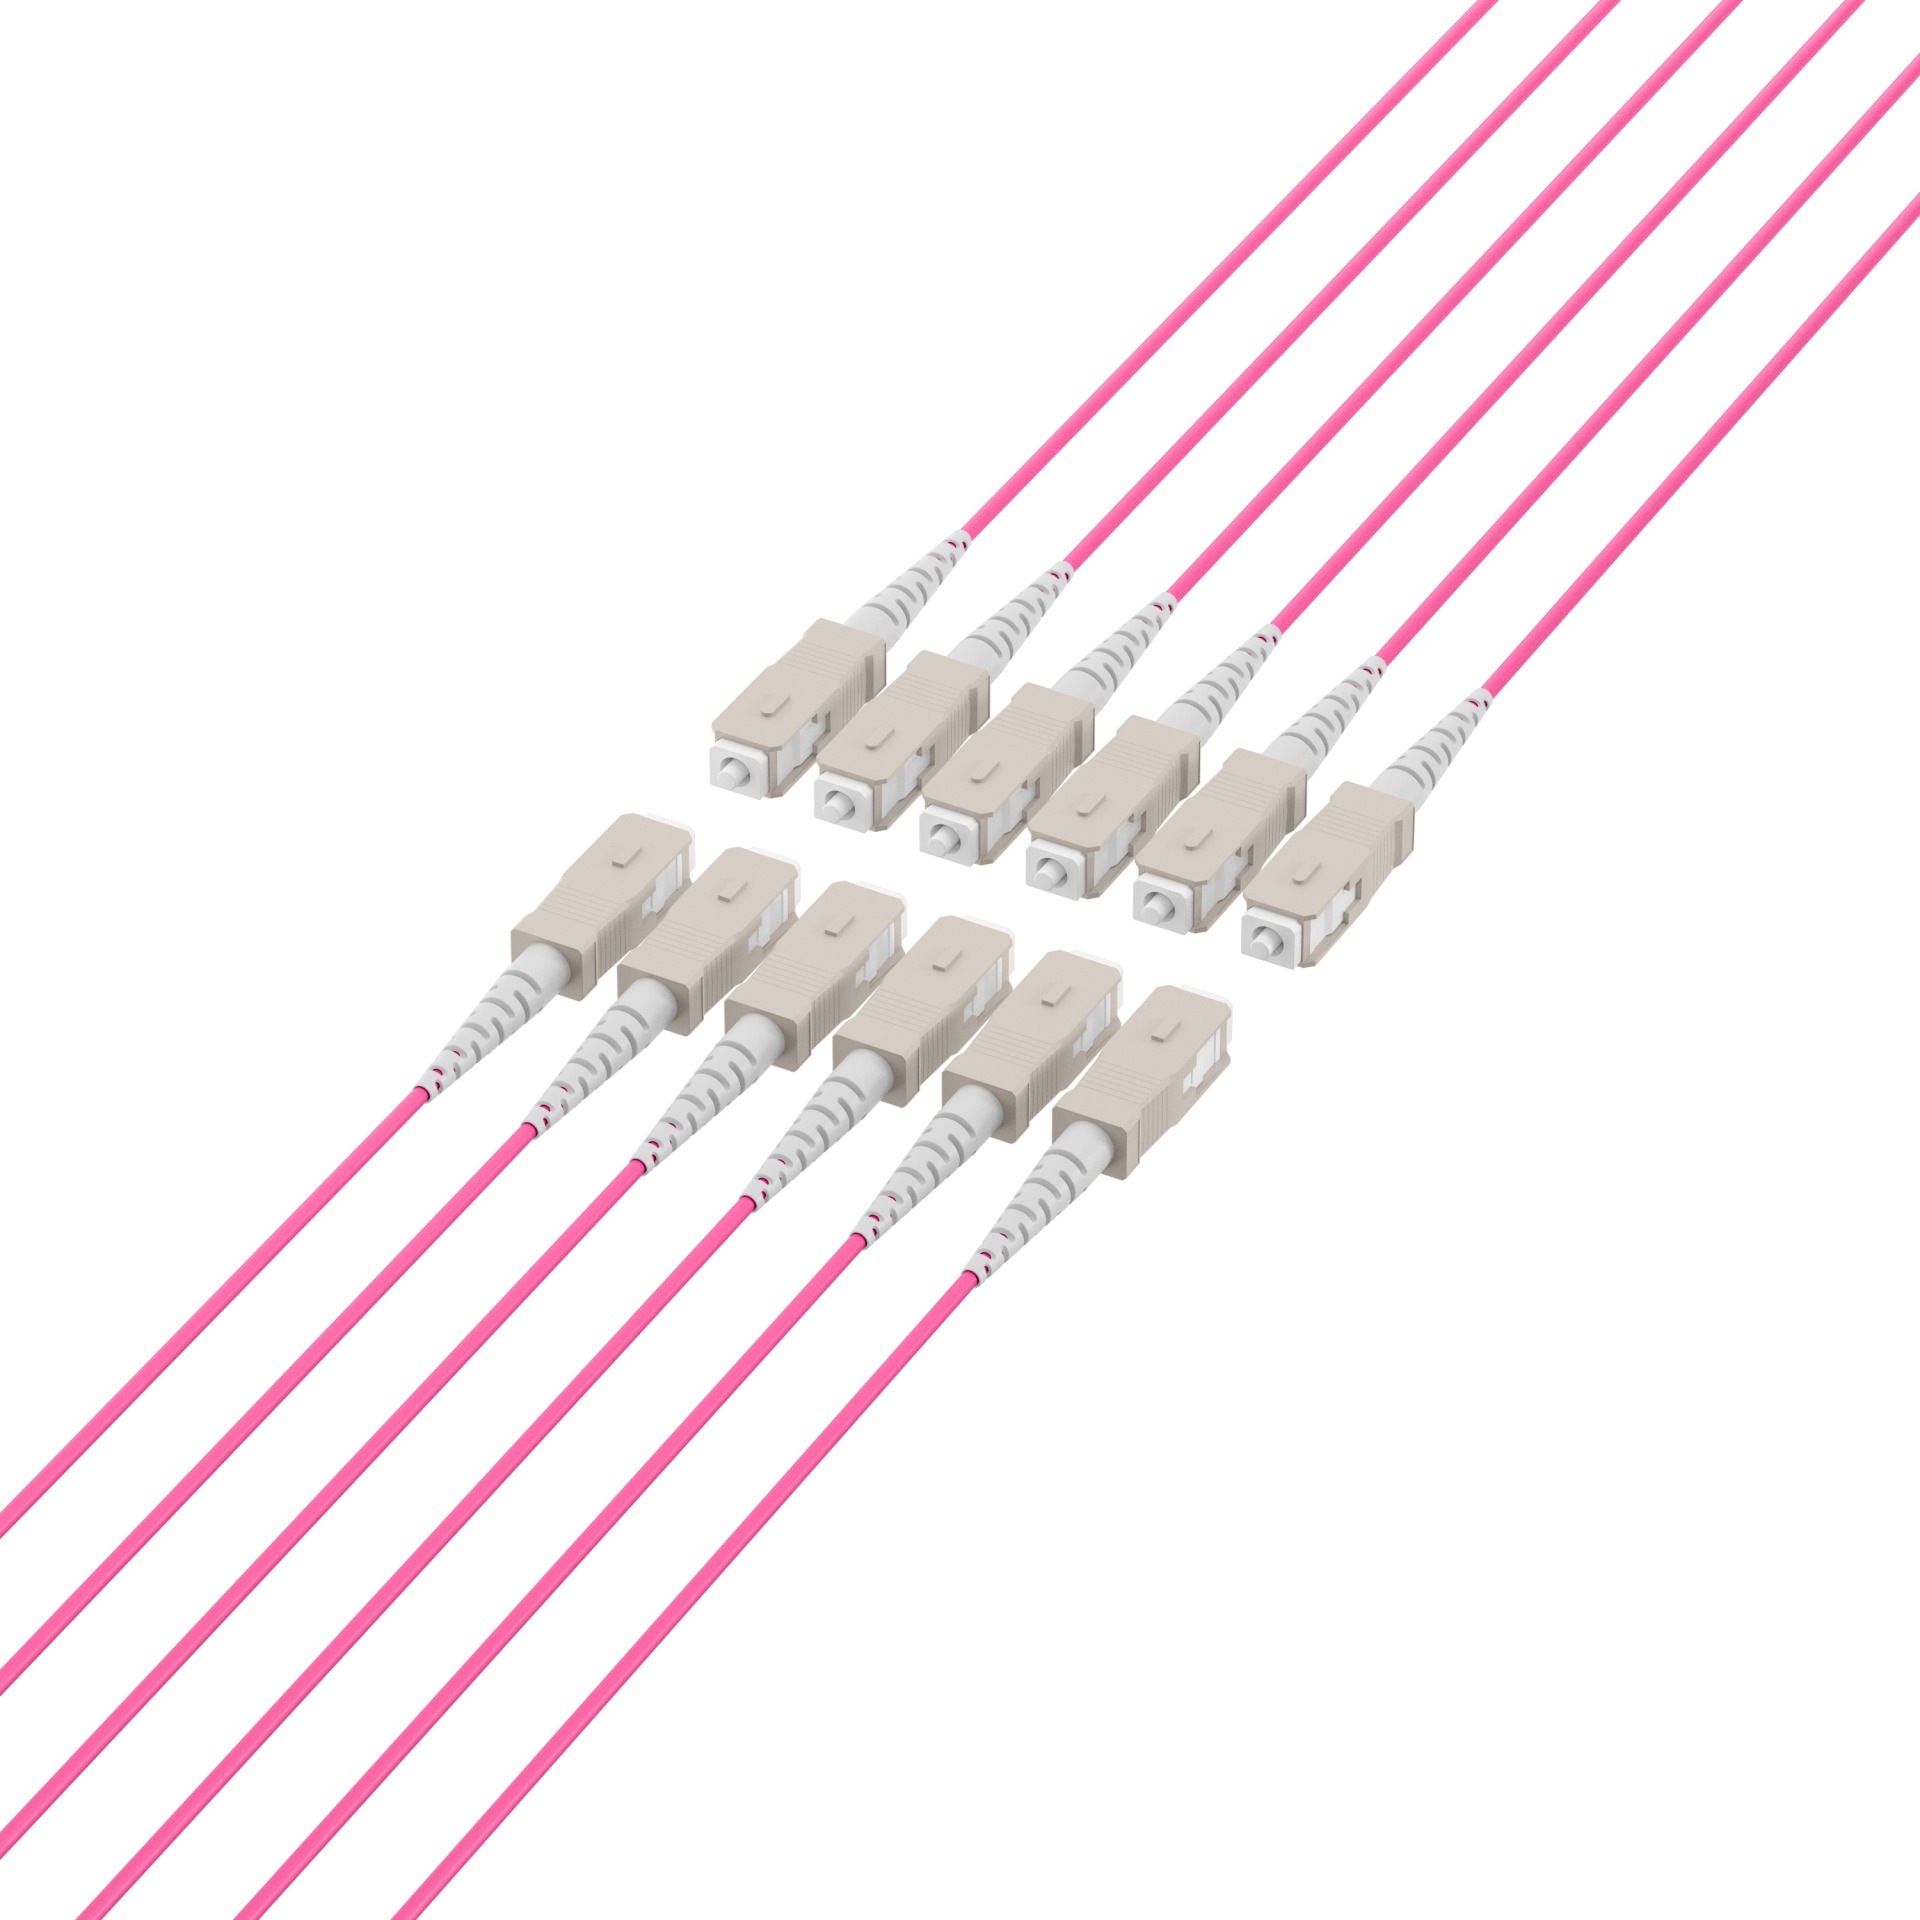 Trunk cable U-DQ(ZN)BH OM4 12G (1x12) SC-SC,150m Dca LSZH